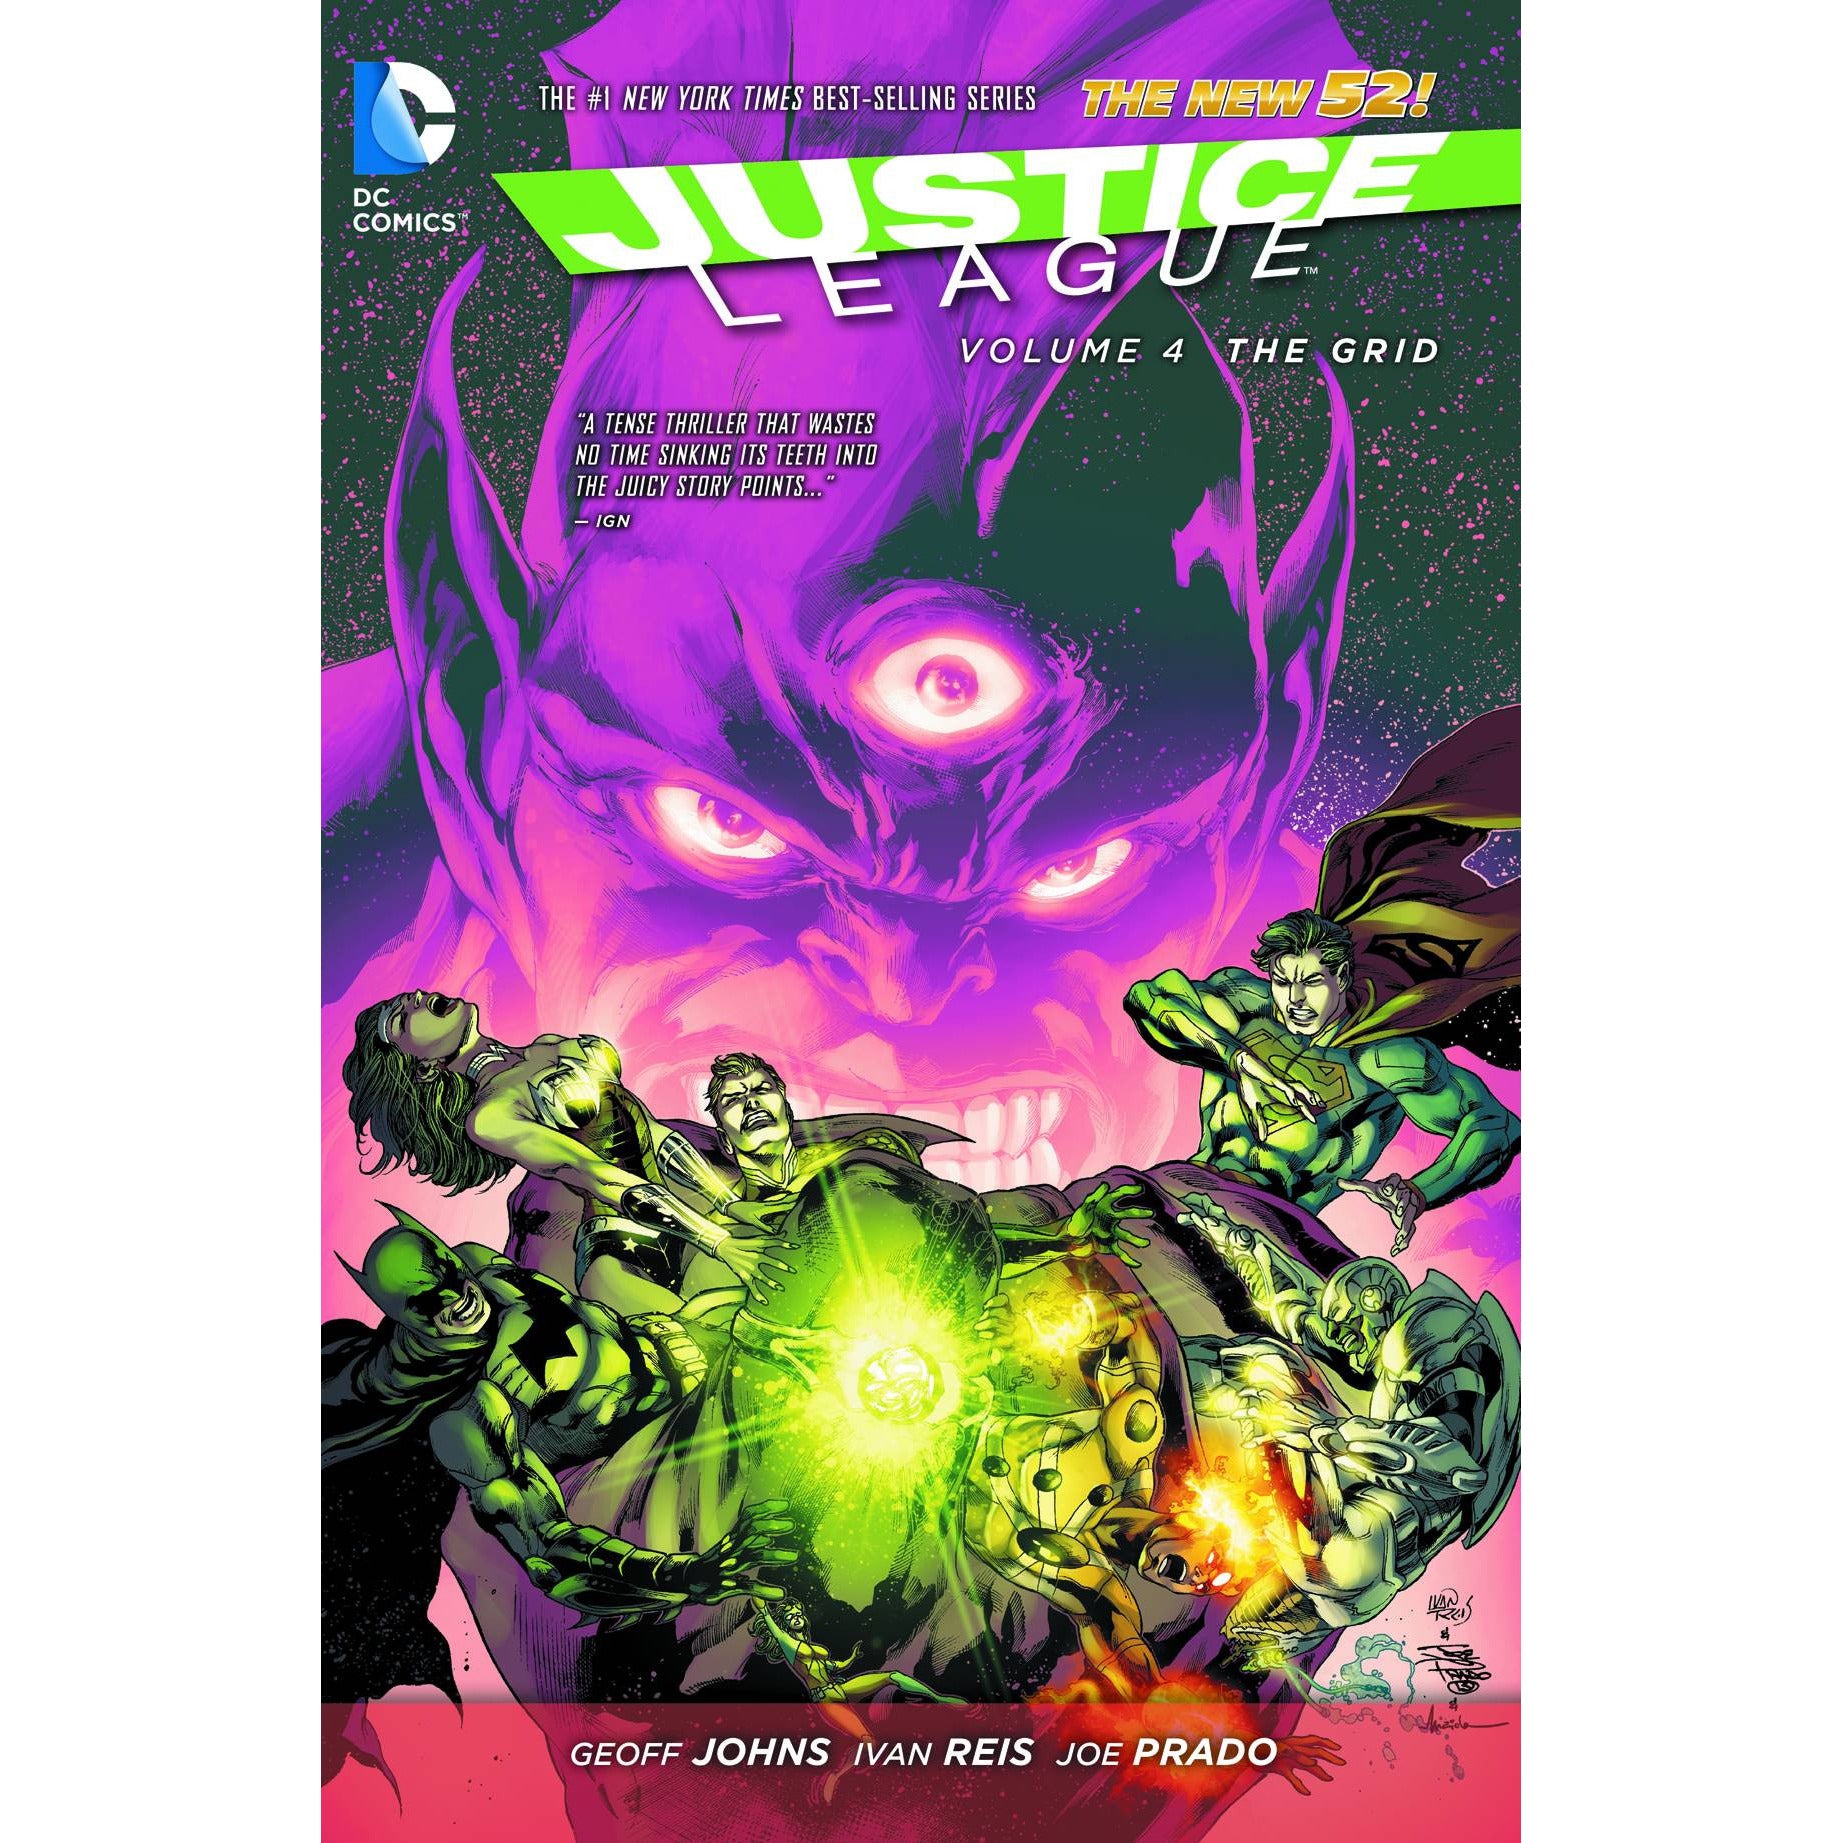  Justice League Vol. 4 The Grid (N52) TP Uncanny!